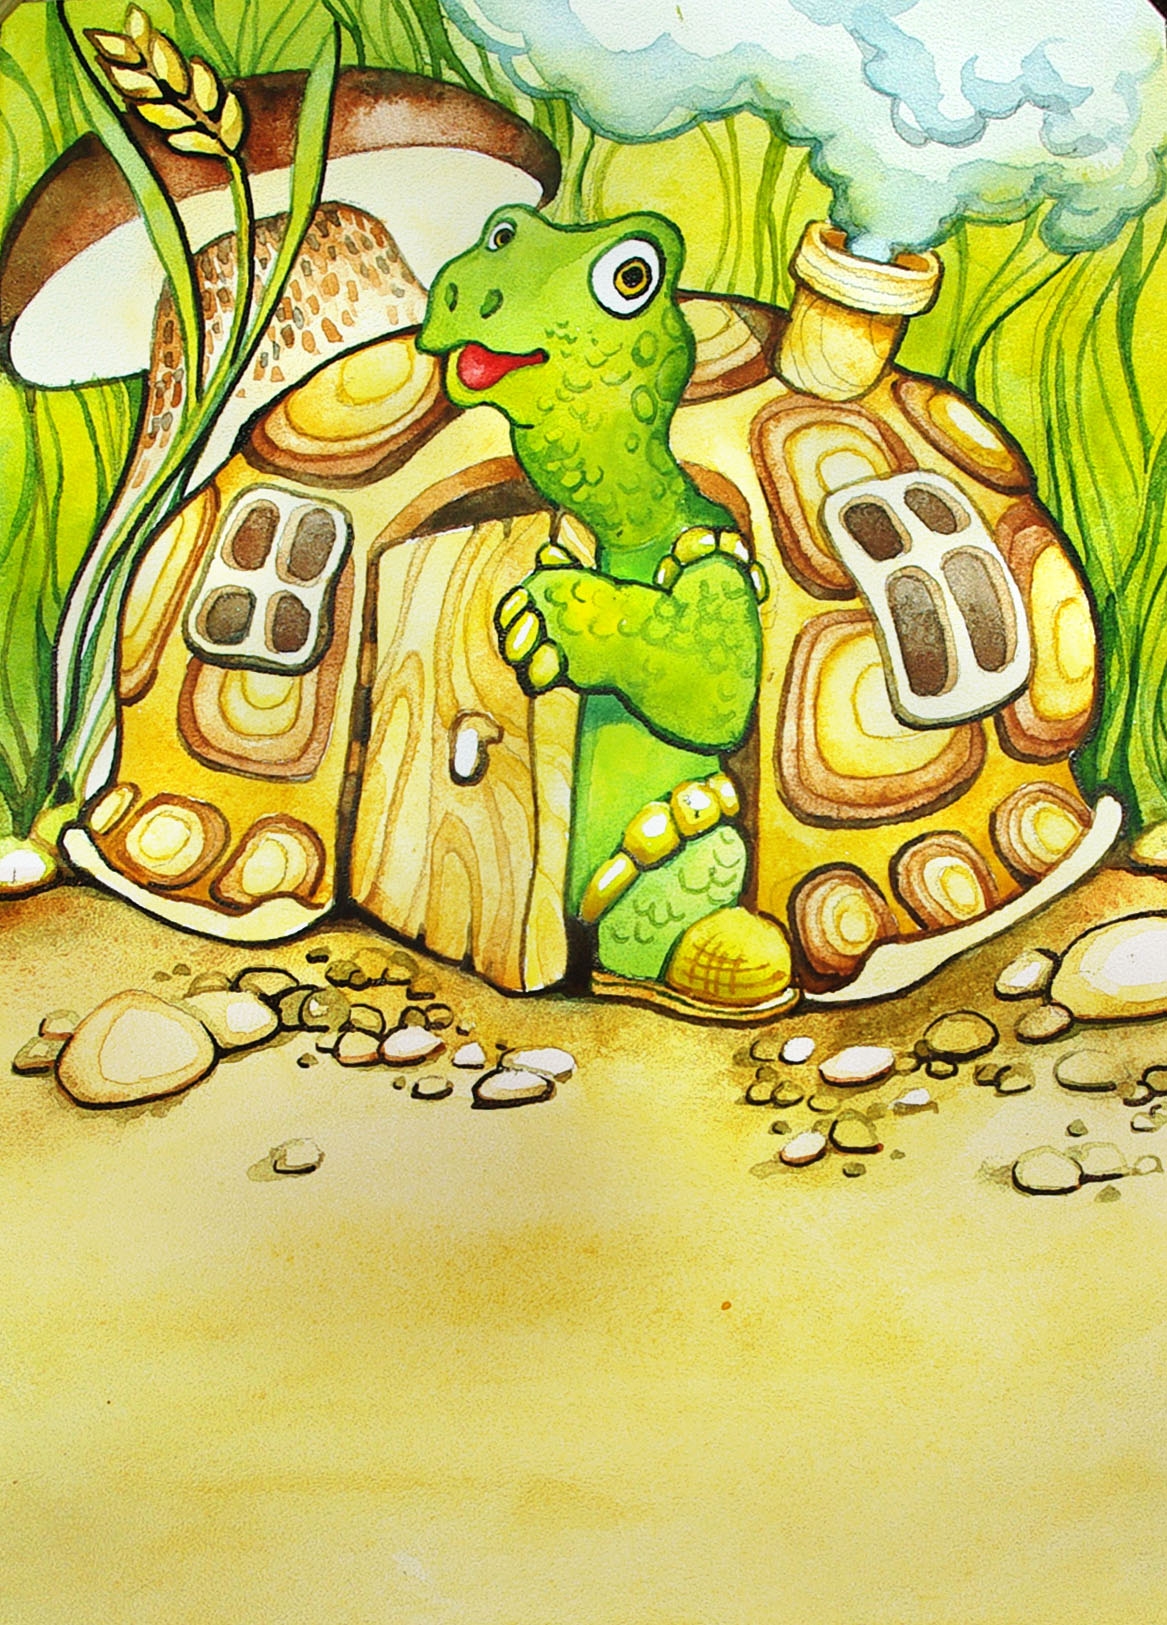 Читать сказку черепаха. Черепаха Тортилла. Черепаха Тортилла из Буратино. Сказочная черепаха. Черепаха мультяшная.